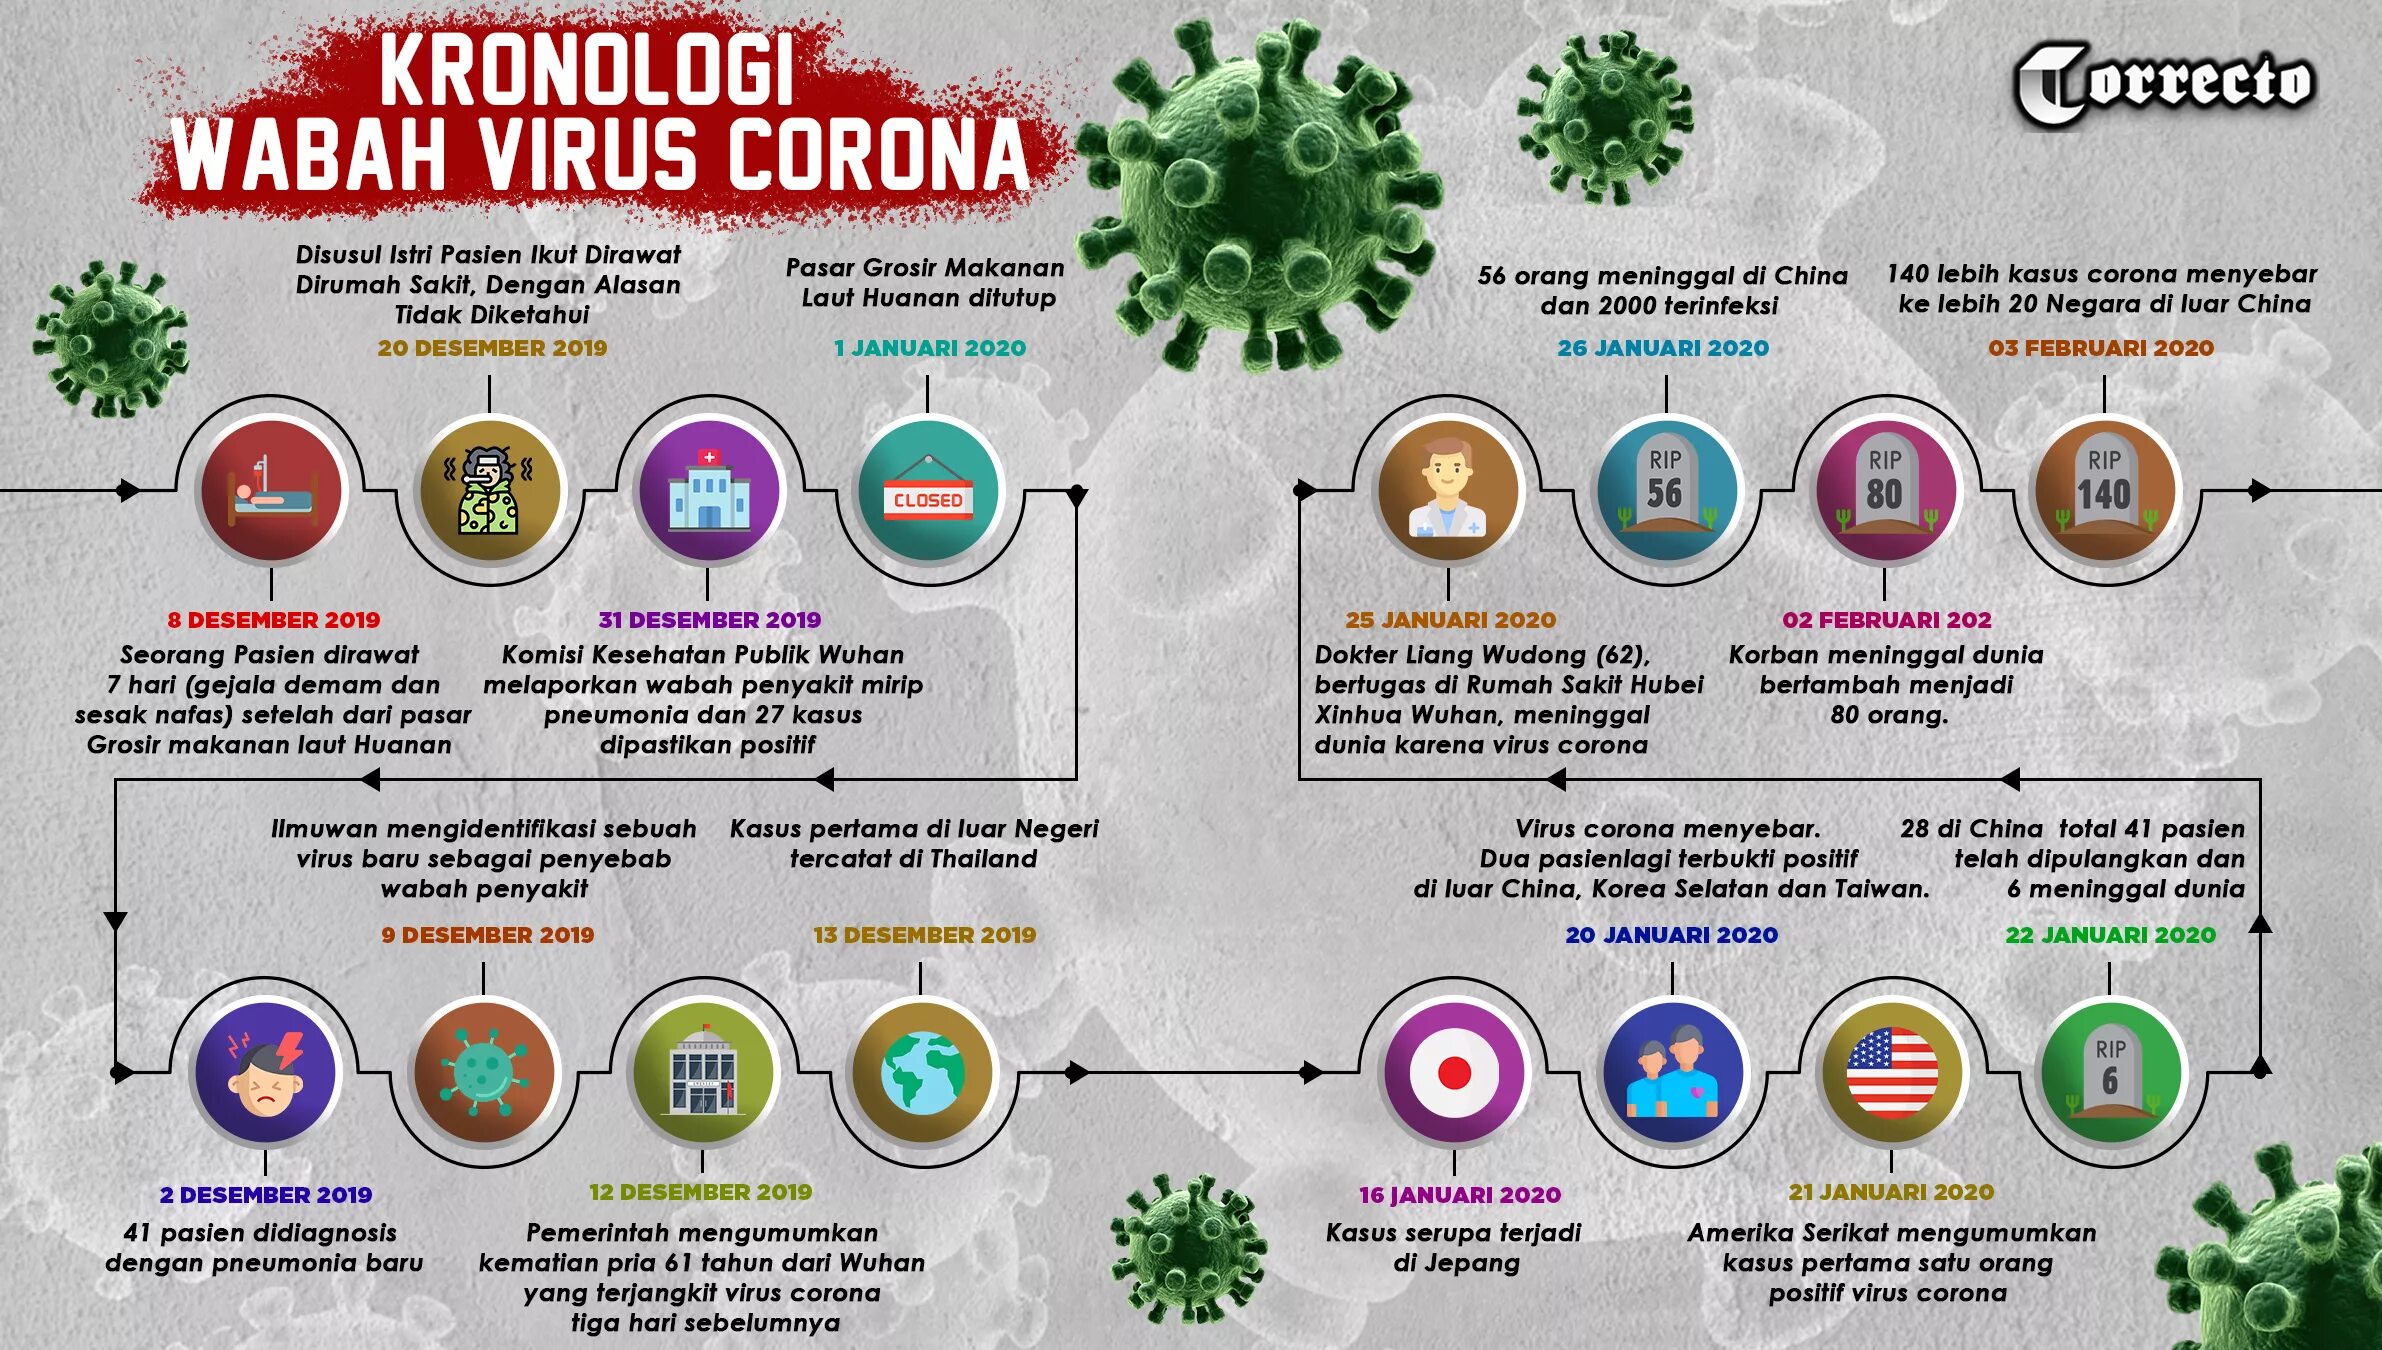 Коронавирус. Вирус коронавирус. Как выглядит коронавирус. Плакат вирусы. Признаки коронавируса полный список